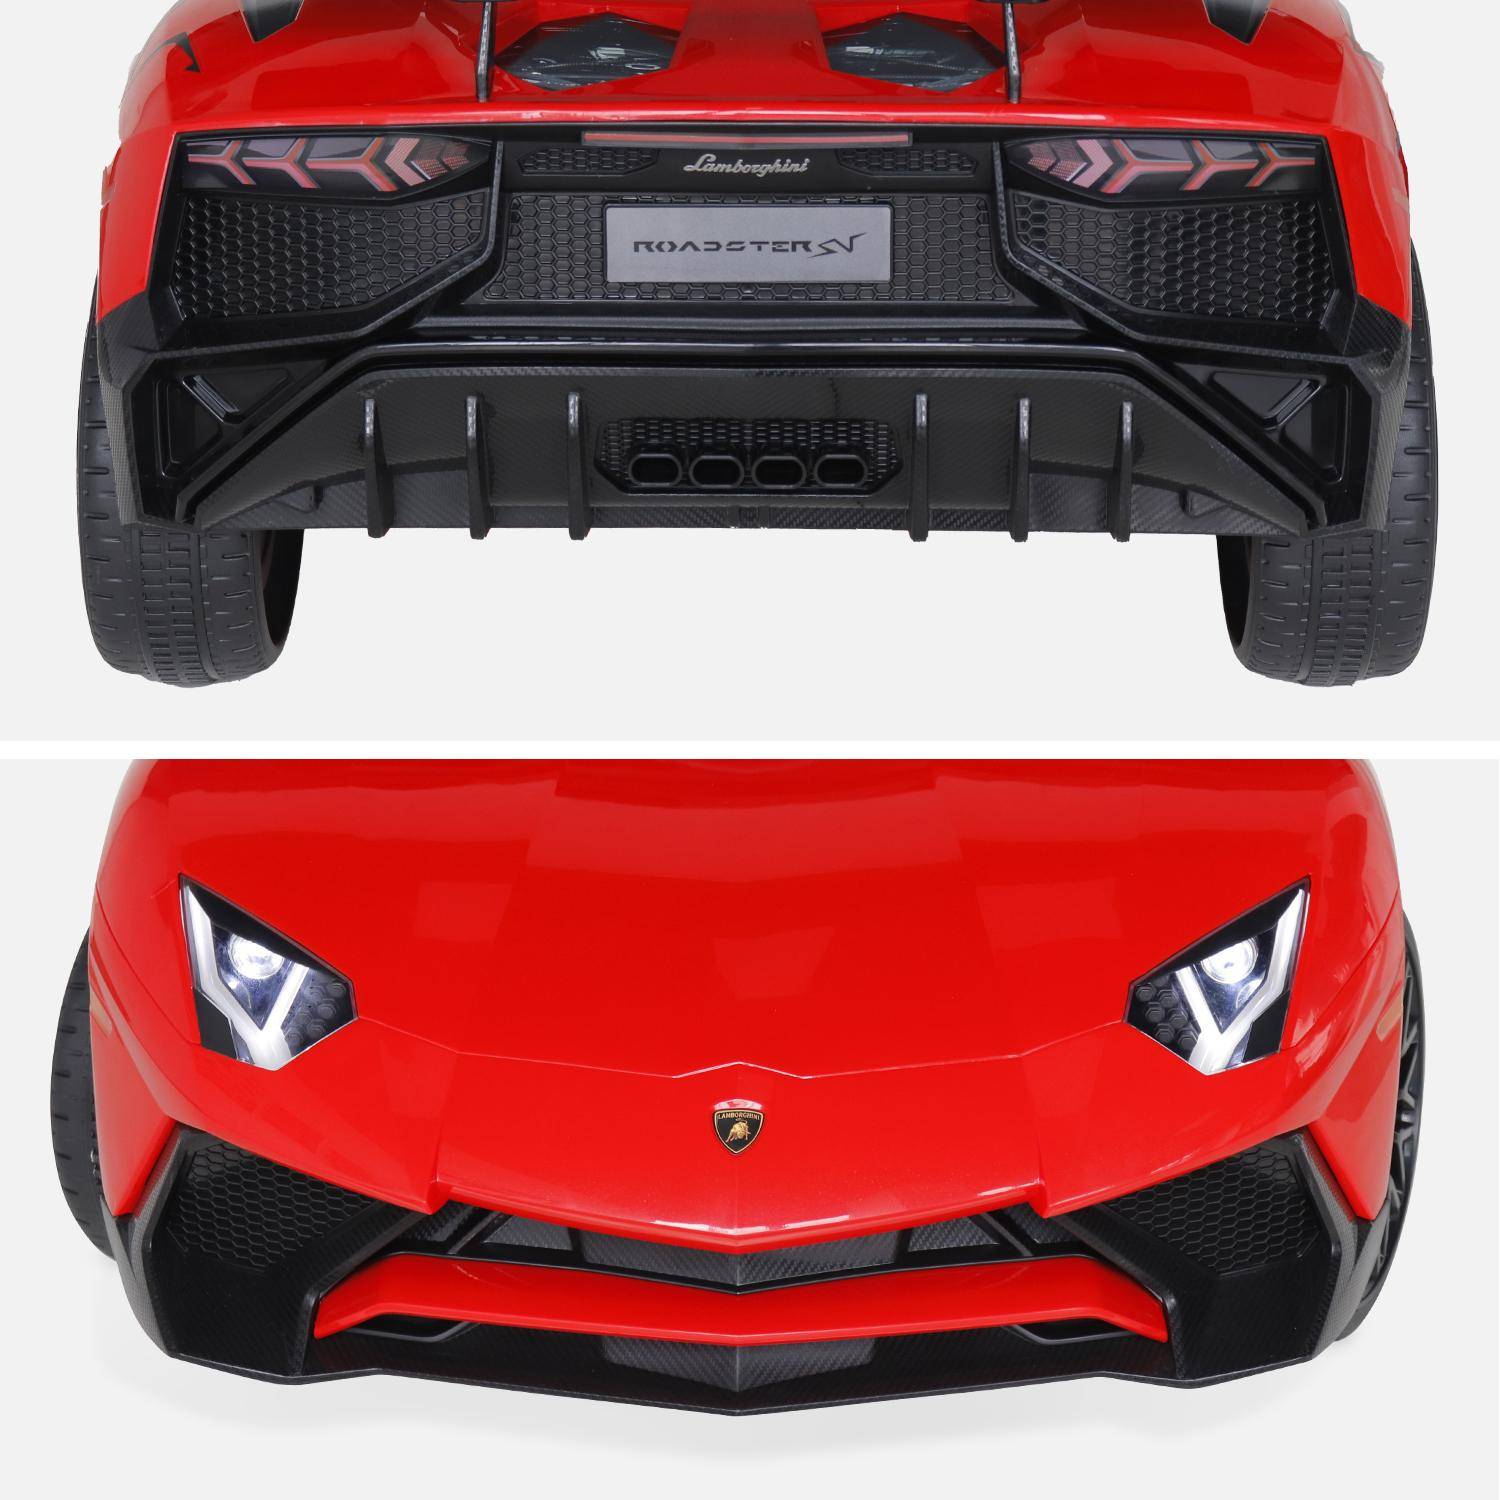 12V Lamborghini elektrische kinderauto, rood, 1 zitplaats, met autoradio, afstandsbediening, MP3, USB-poort en koplampen. Snelle levering, 2 jaar garantie. Photo7